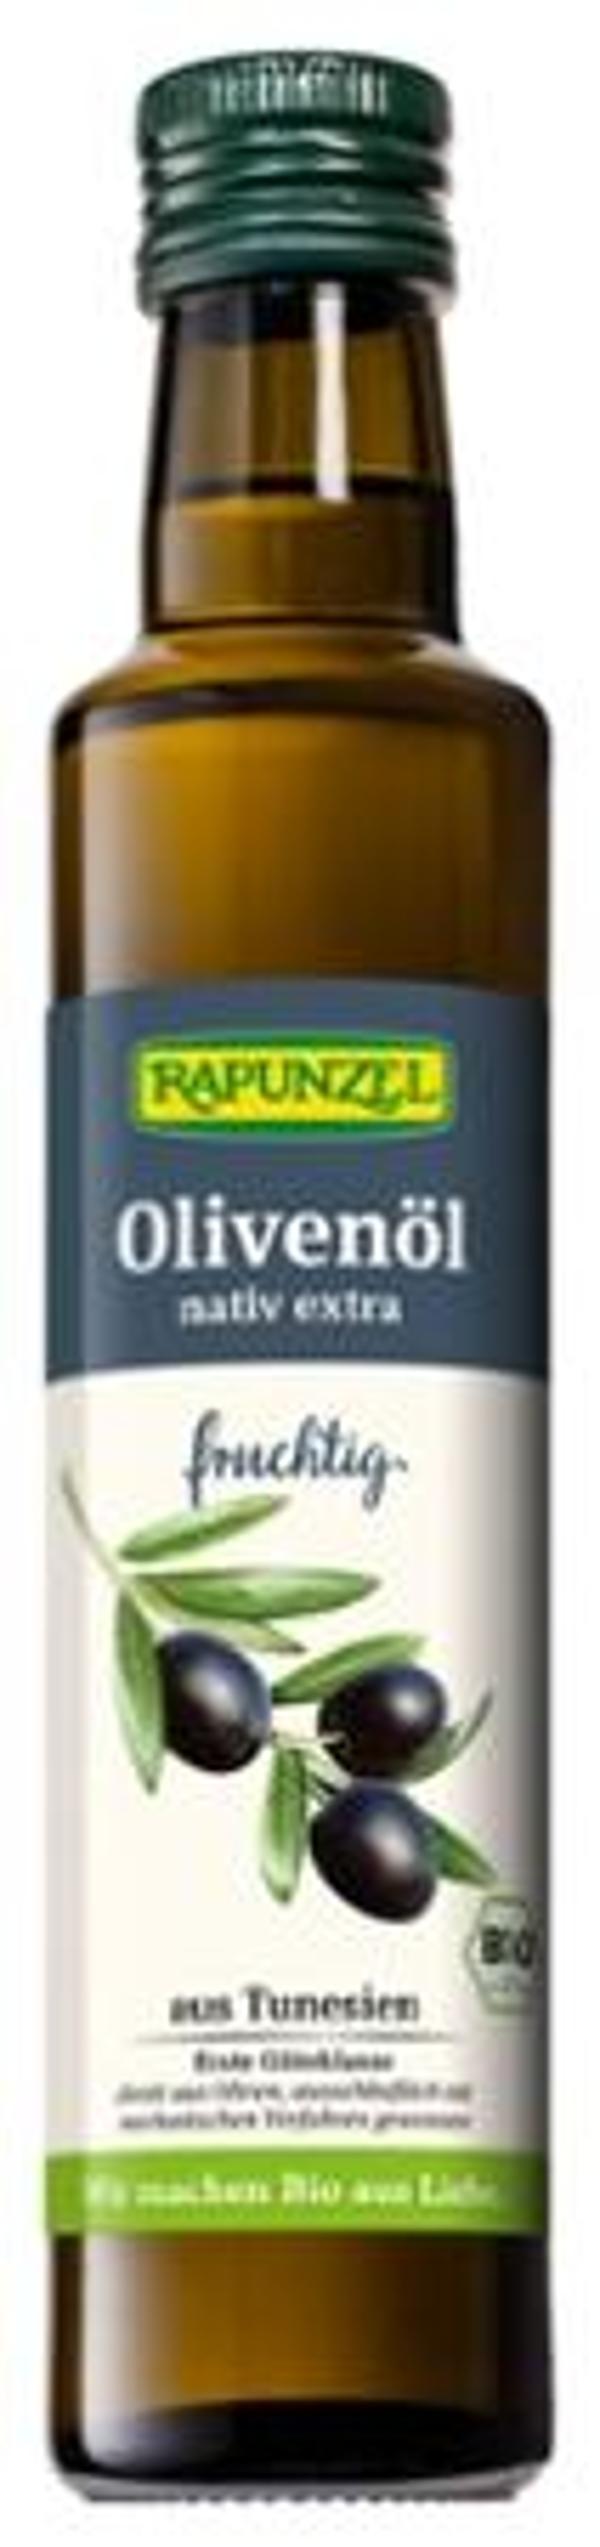 Produktfoto zu Olivenöl fruchtig, 250 ml R